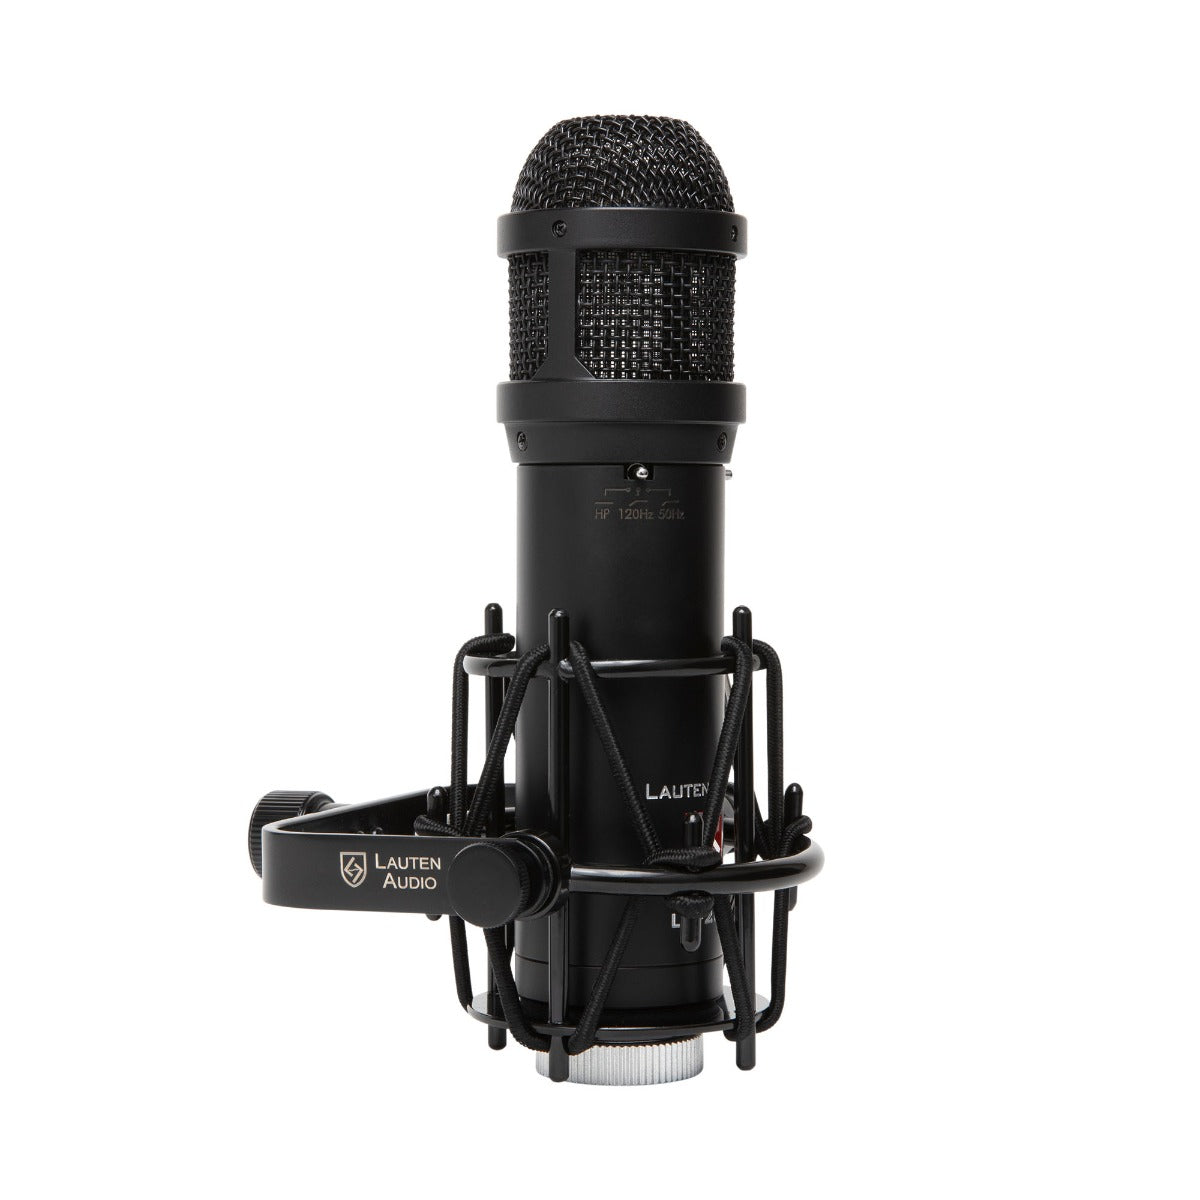 Lauten Audio LS-208 Large Diaphragm Condenser Microphone view 2